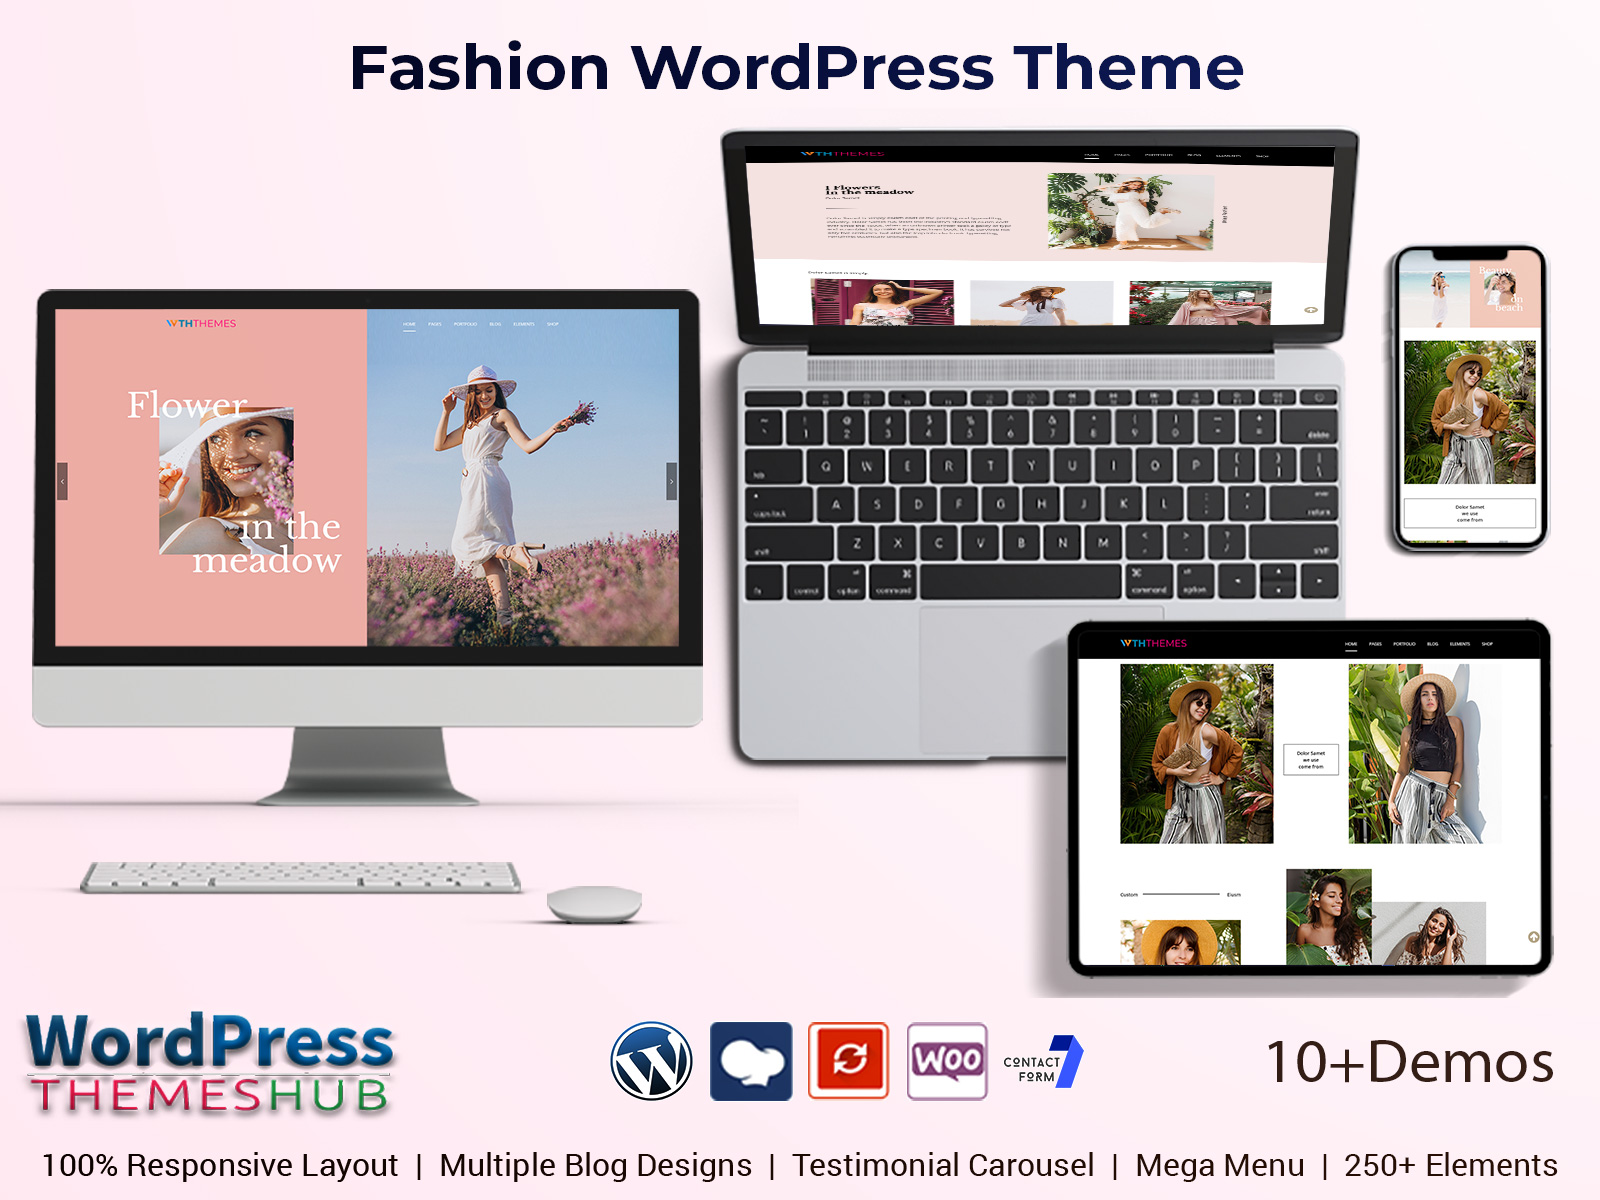 Fashion WordPress Theme To Make Fashion Store Website